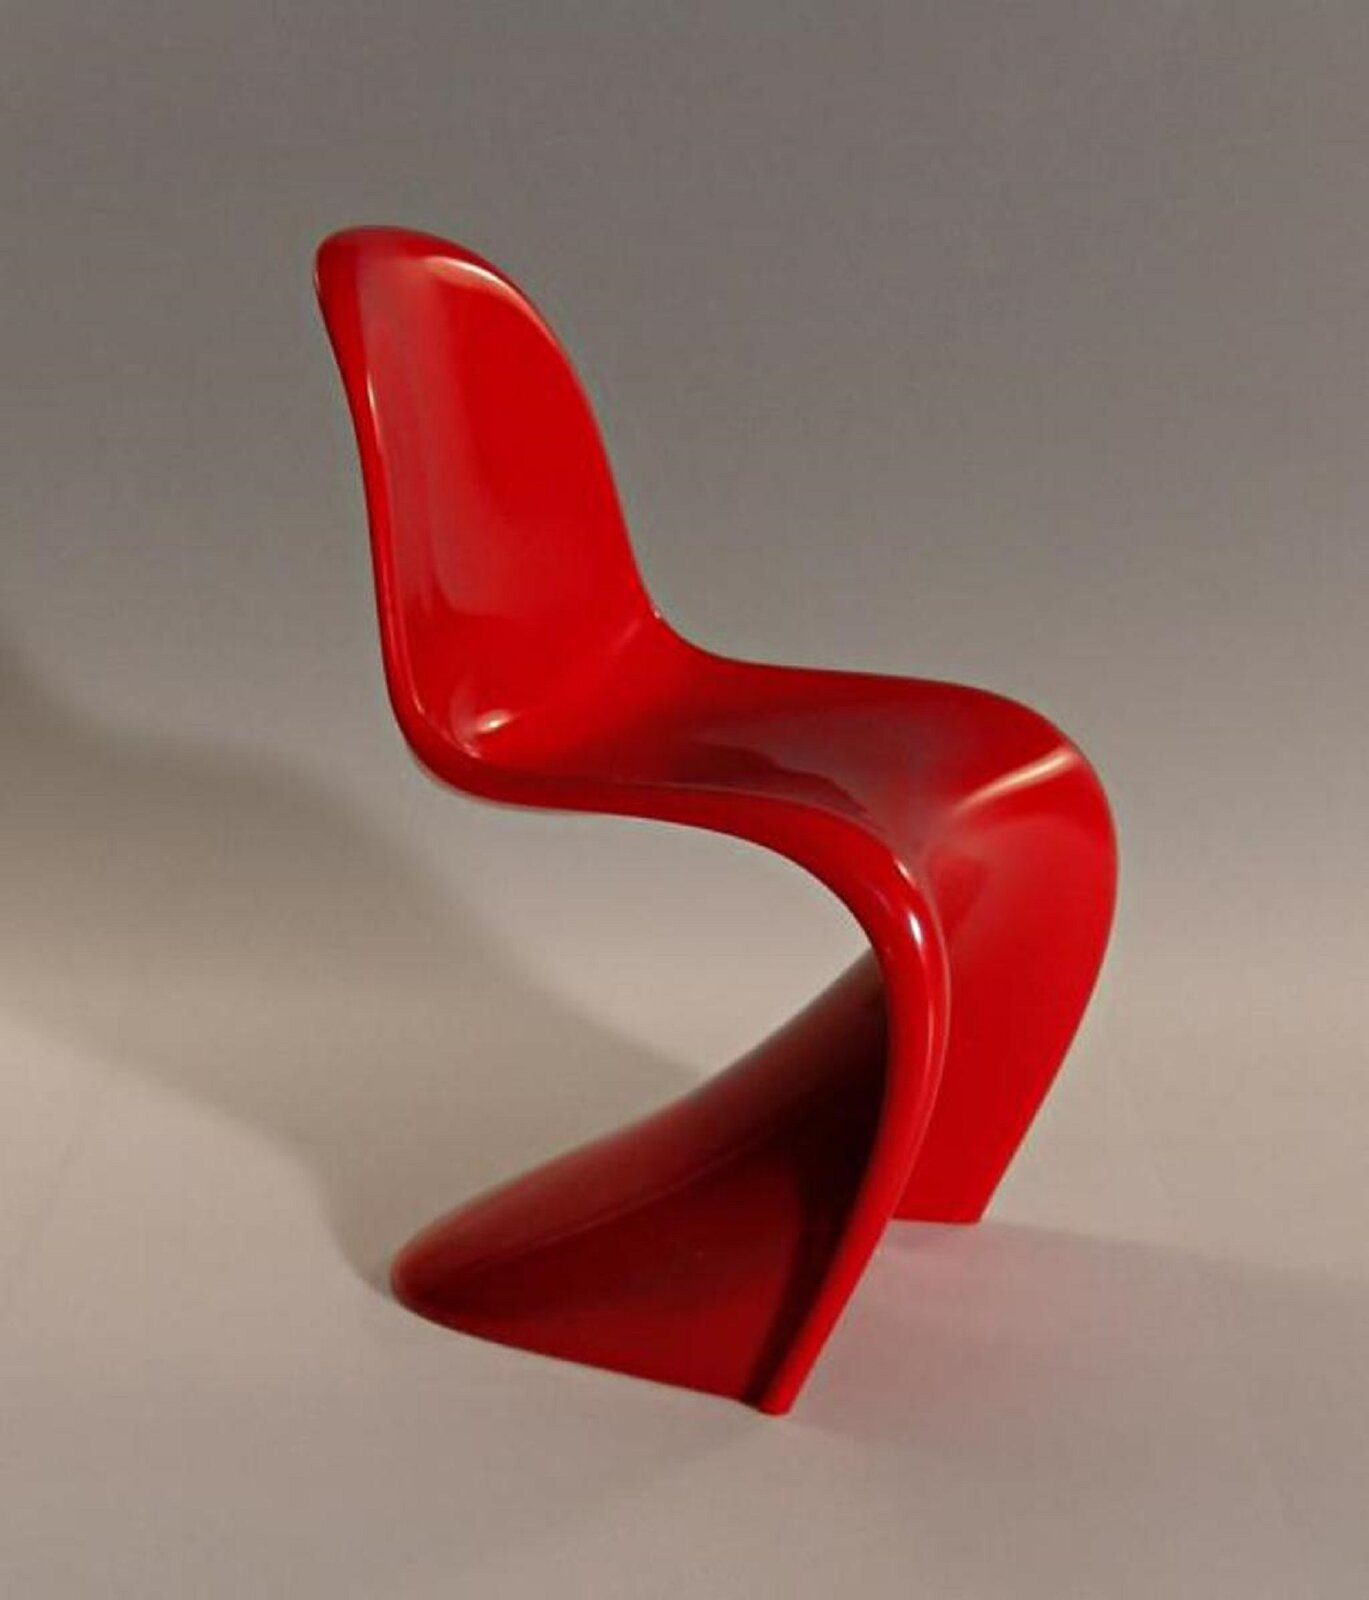 Fotografia przedstawia krzesło Panton projektu Vernera Pantona – krzesło jest czerwone, wykonane z jednego kawałku plastiku, odlewane w formie, nóżki krzesła są płytkie, cofnięte do tyłu. Zdjęcie zostało wykonany na szarym tle. 